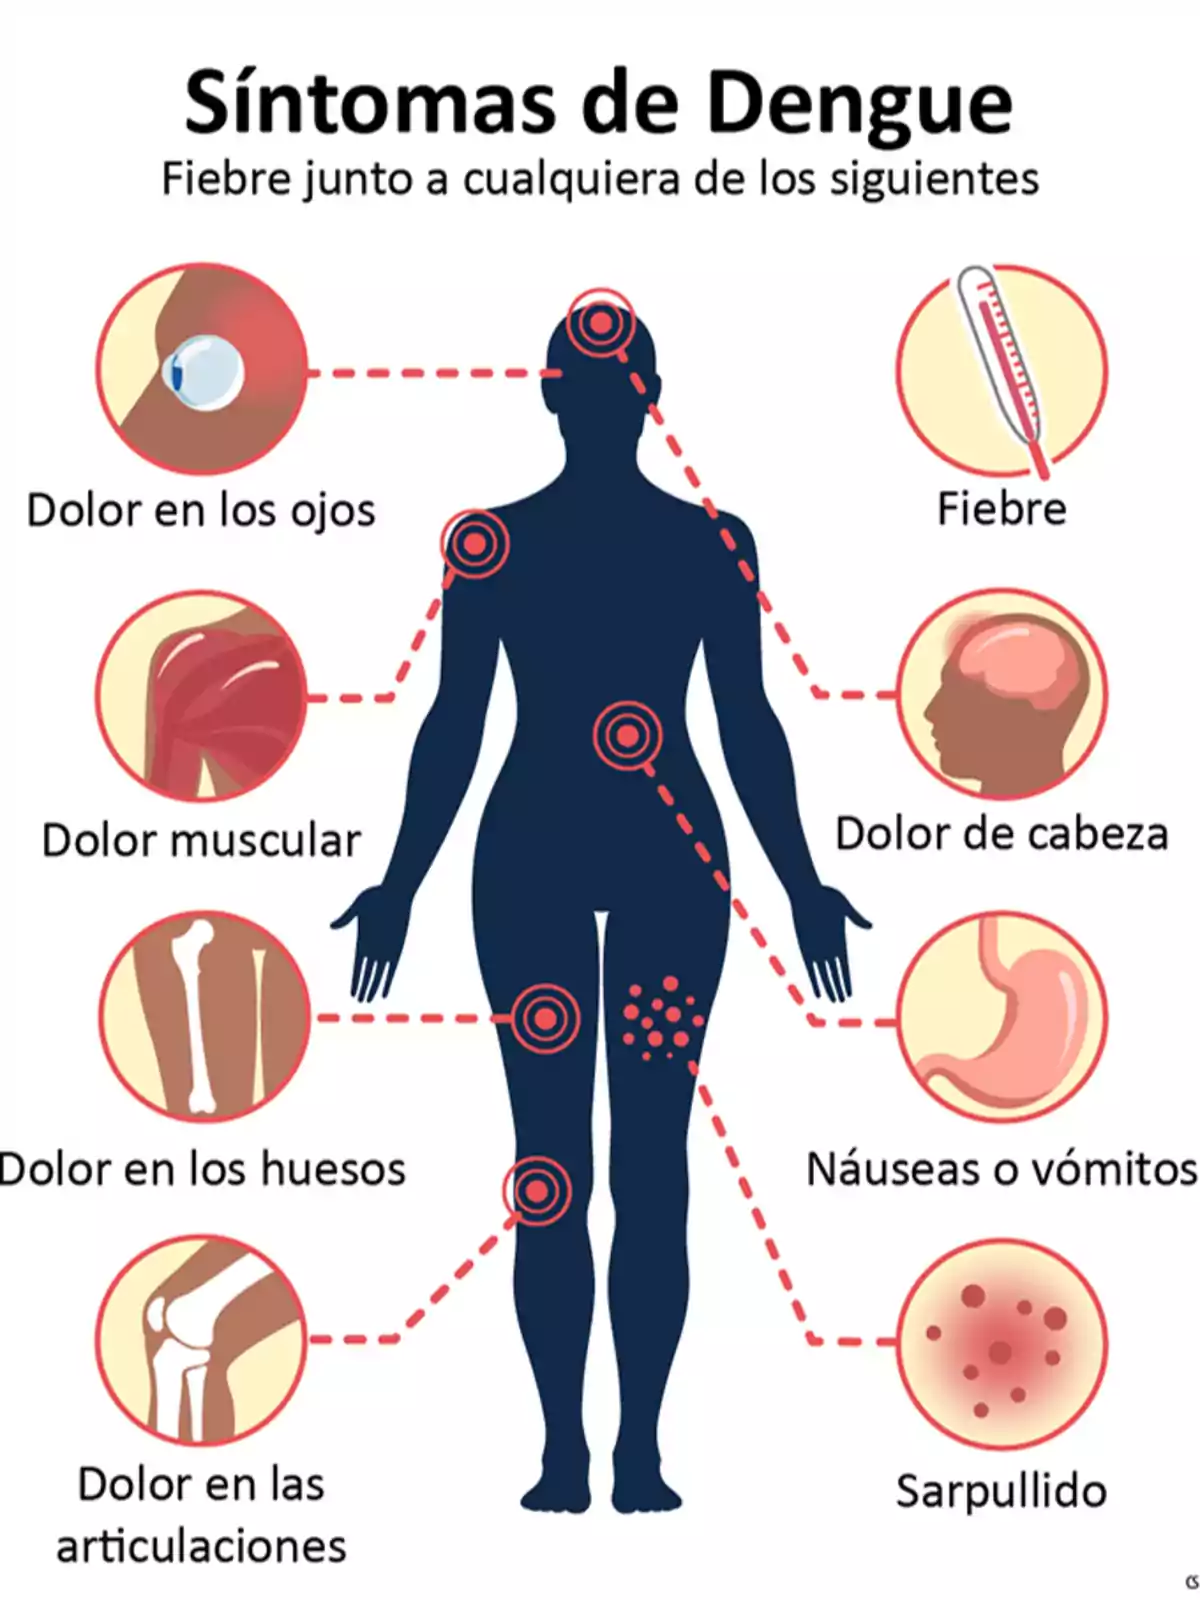 Síntomas de dengue: fiebre, dolor en los ojos, dolor muscular, dolor en los huesos, dolor en las articulaciones, dolor de cabeza, náuseas o vómitos, sarpullido.